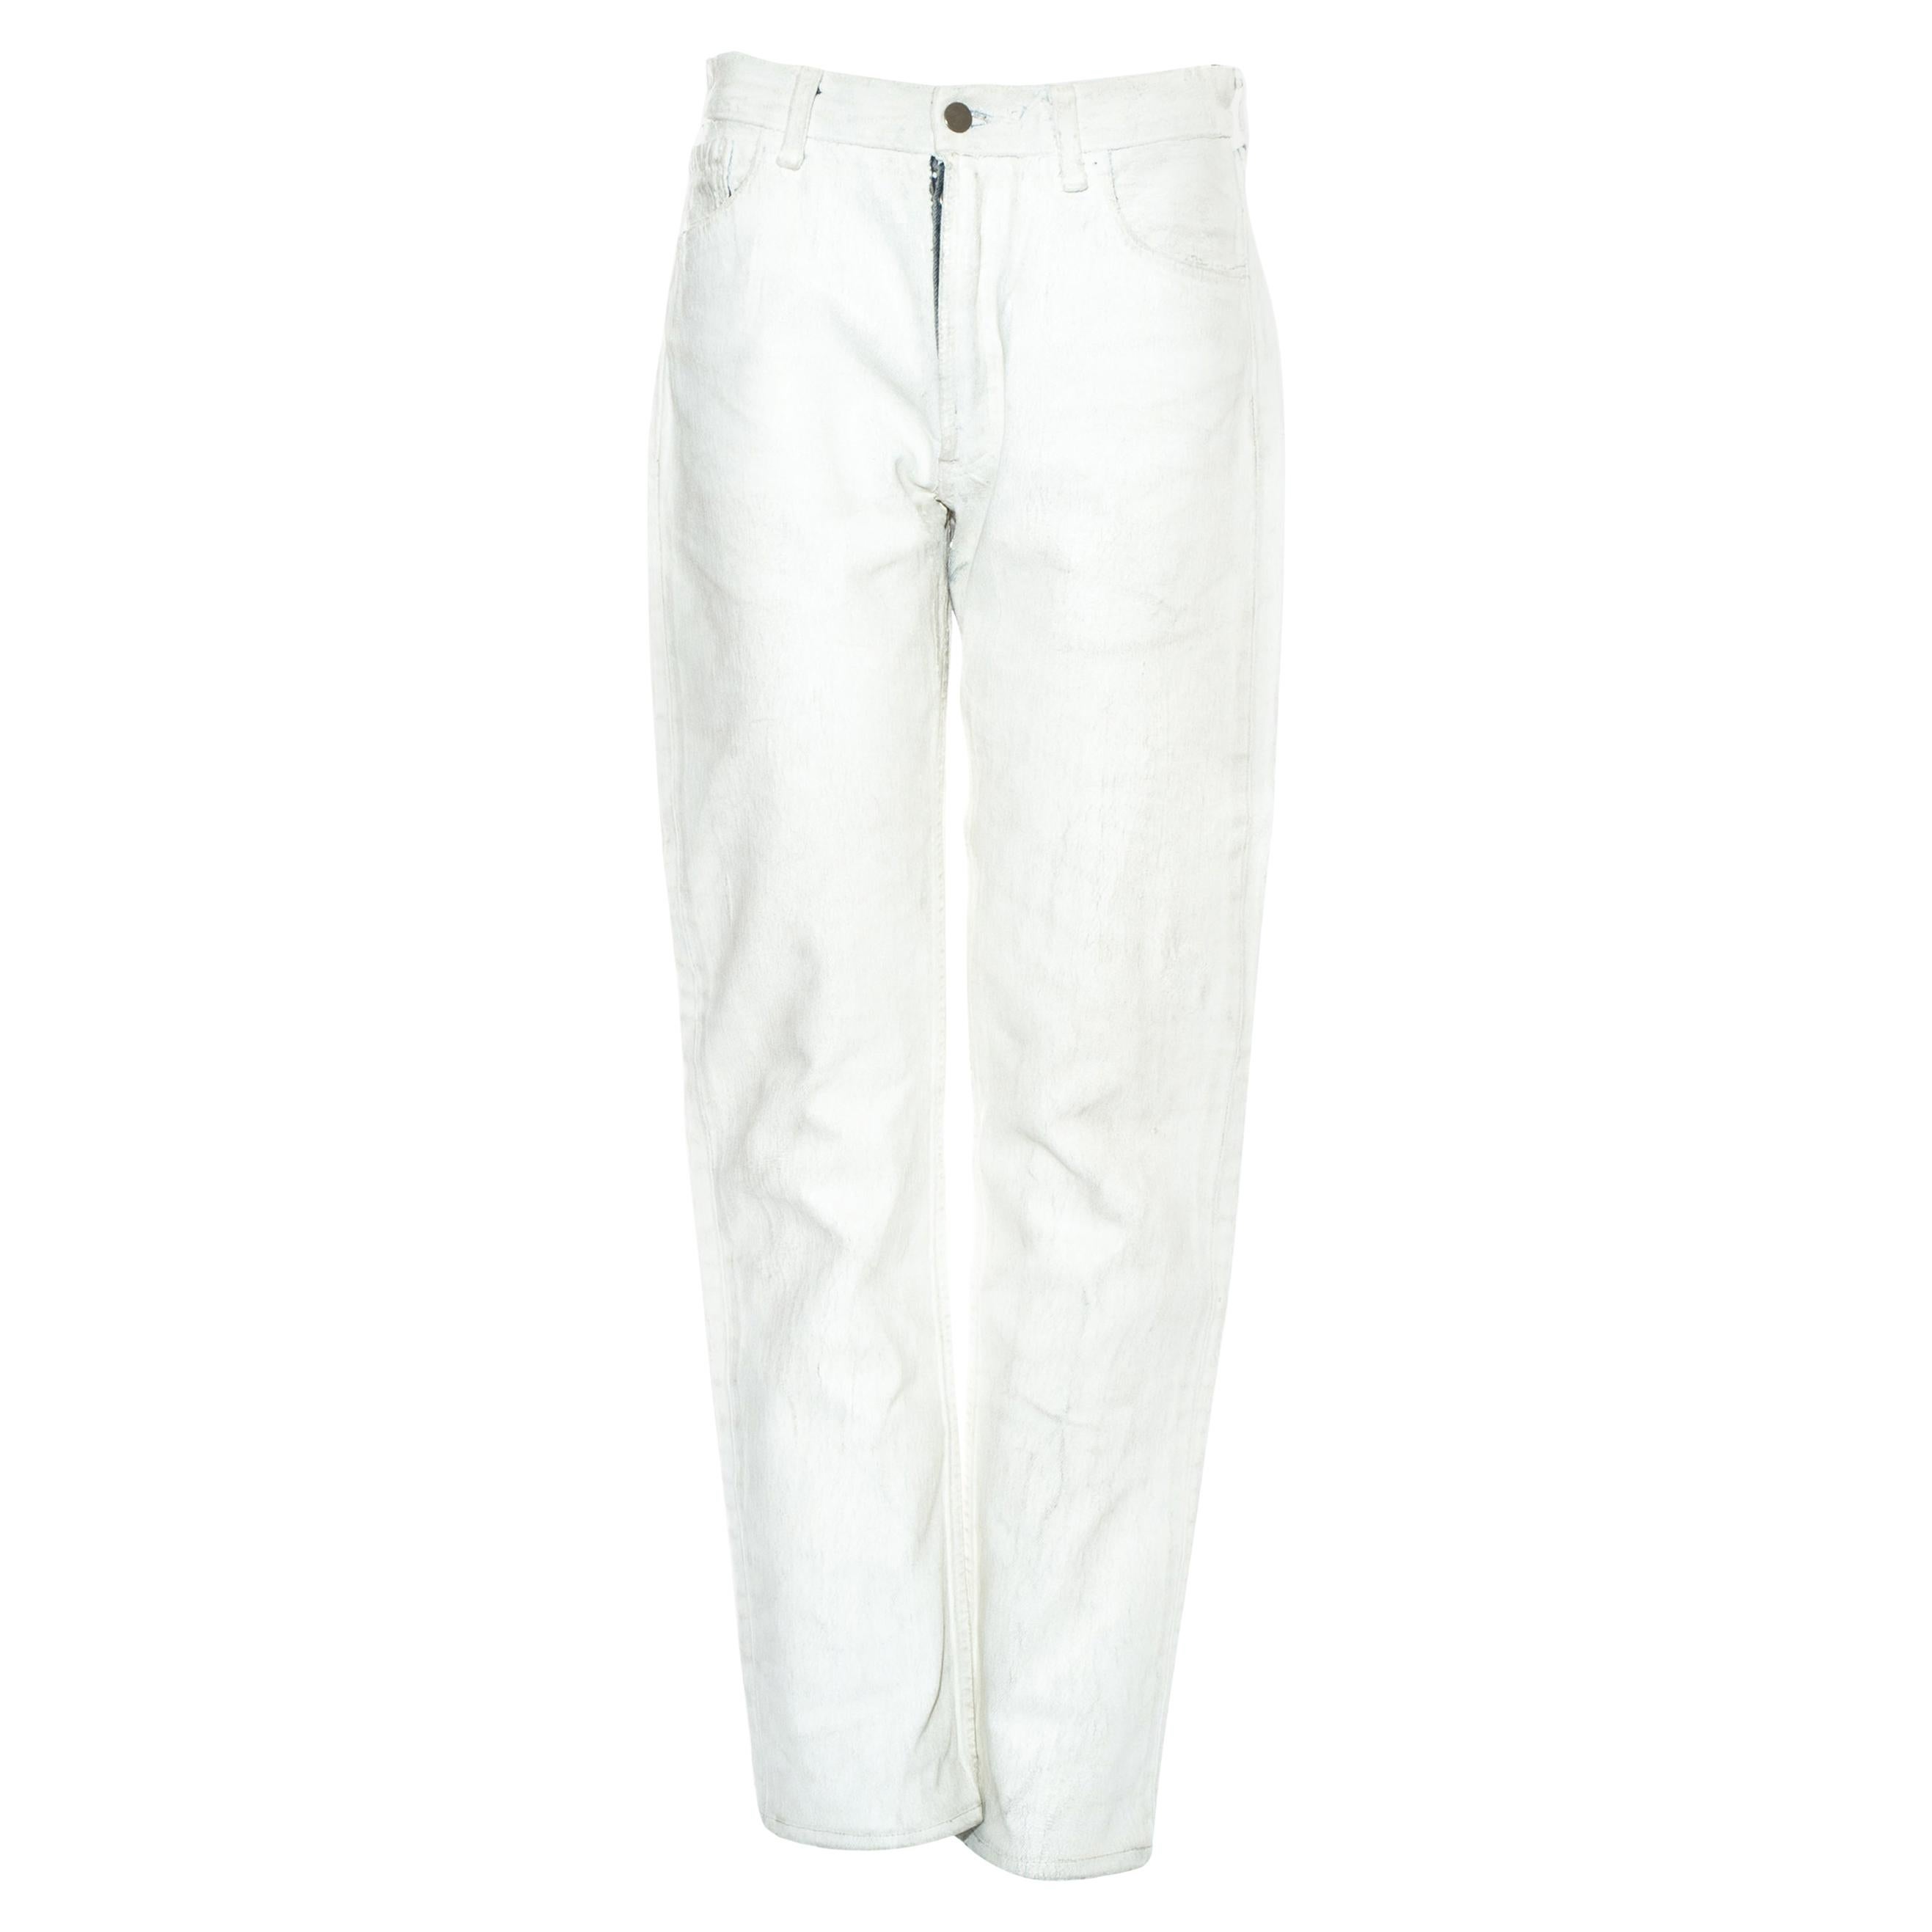 Margiela Pantalon jean artisanal en jean peint en blanc, automne-hiver 1999